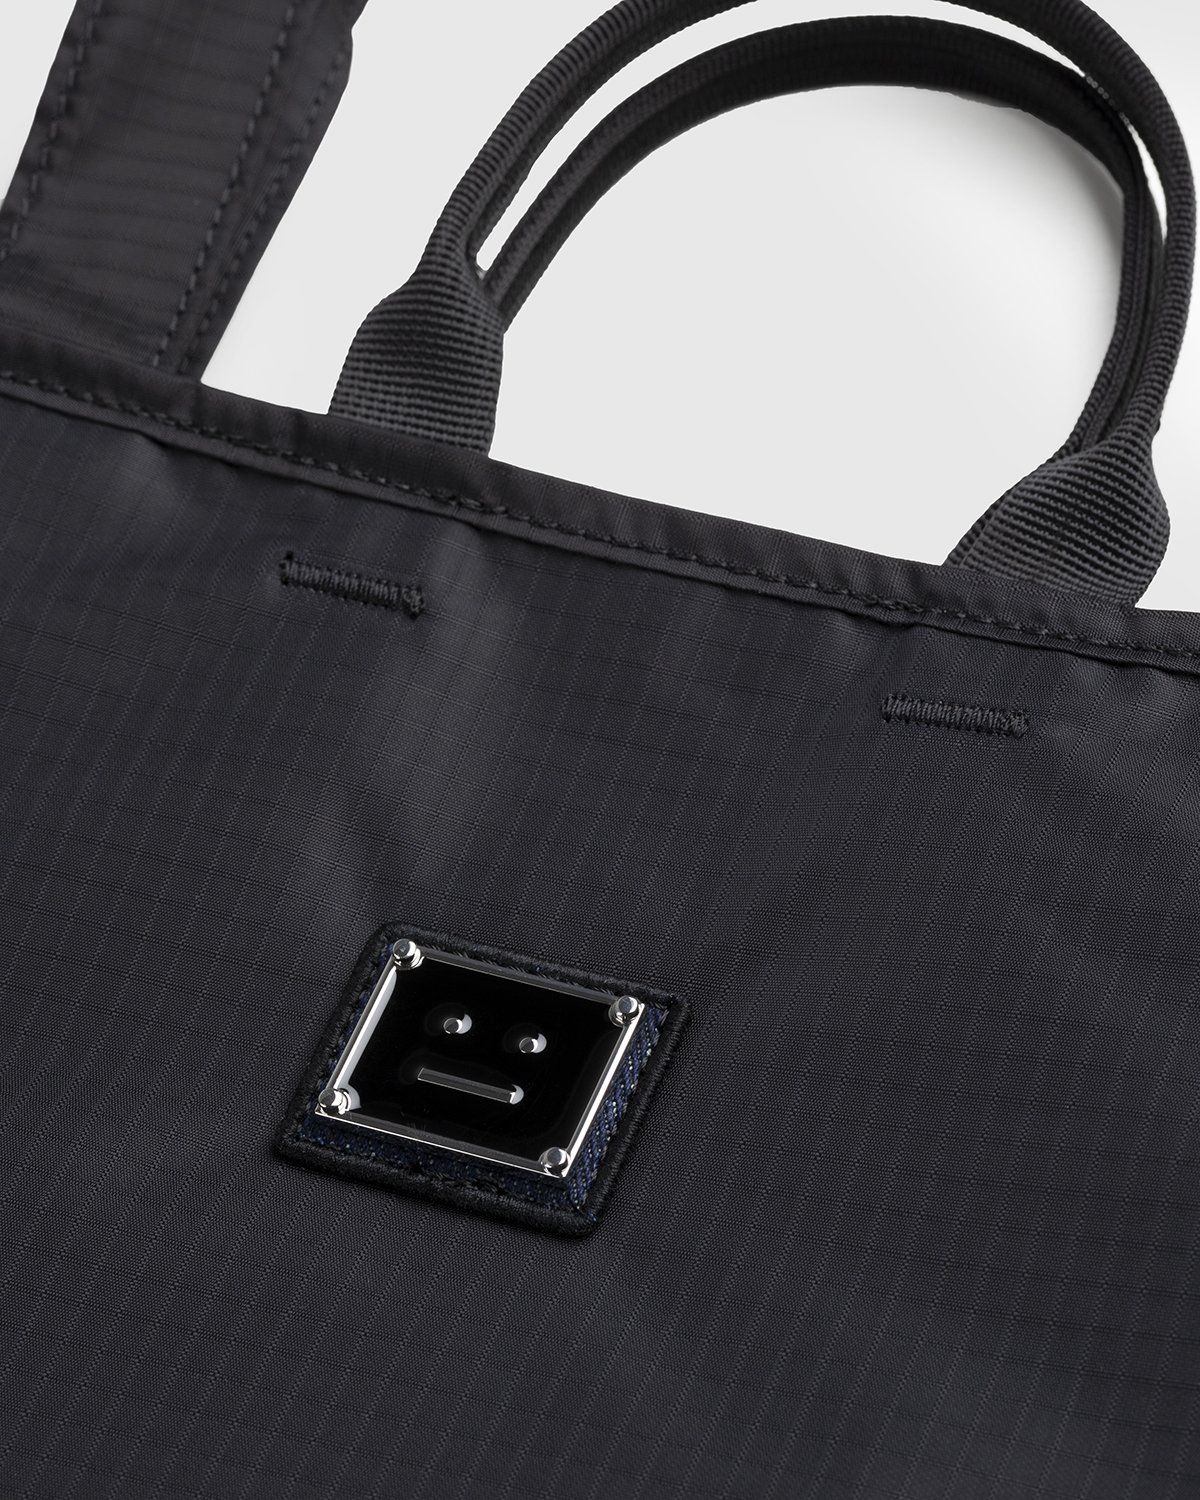 Acne Studios – Shoulder Tote Bag Black - Tote Bags - Black - Image 4